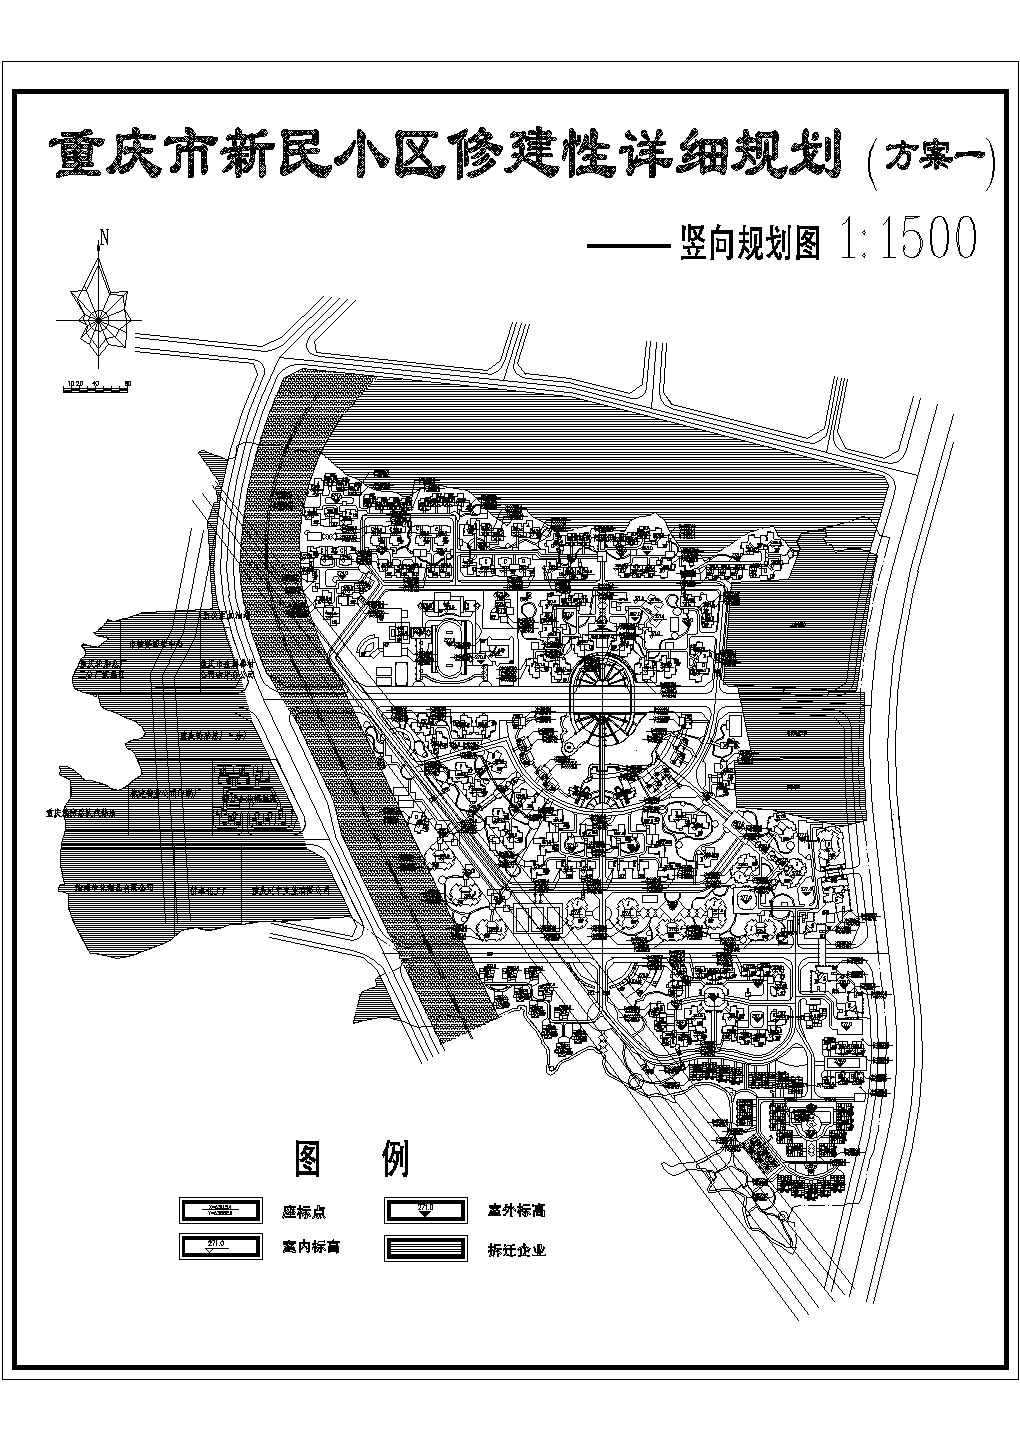 重庆新民小区修建性详细规划图